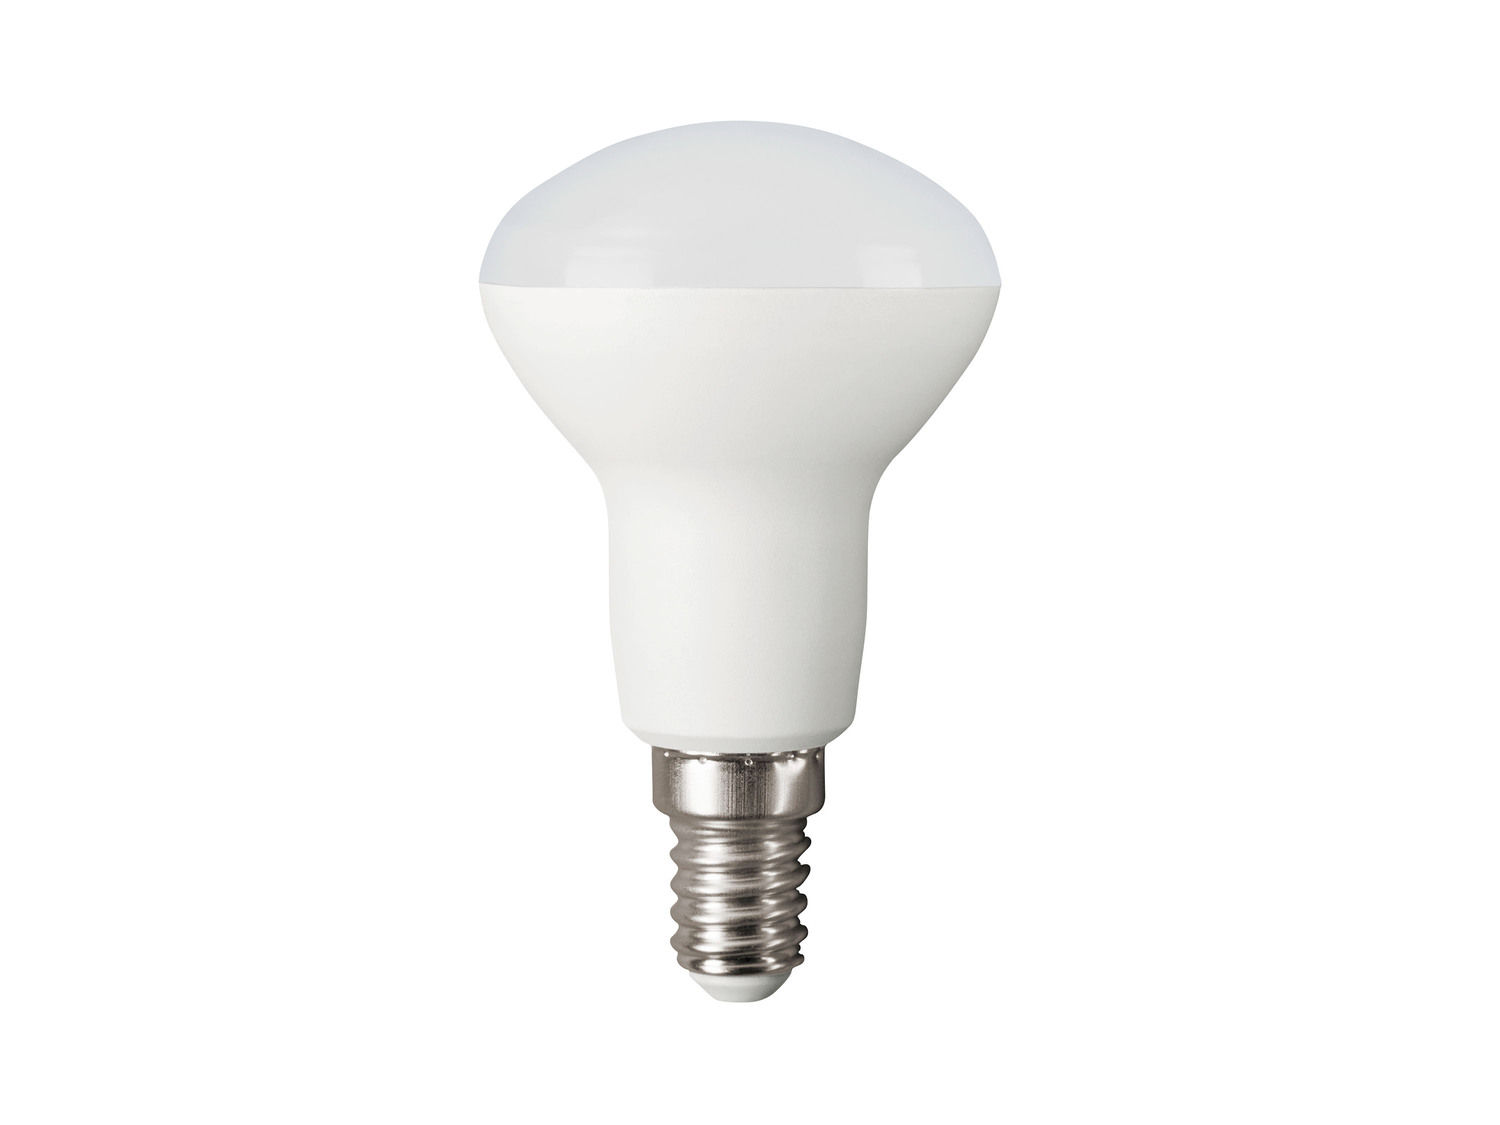 Ampoule LED , le prix 2.49 € 
- Au choix : E27, 7 W, 540 lm ou E14, 3 W, 230 ...